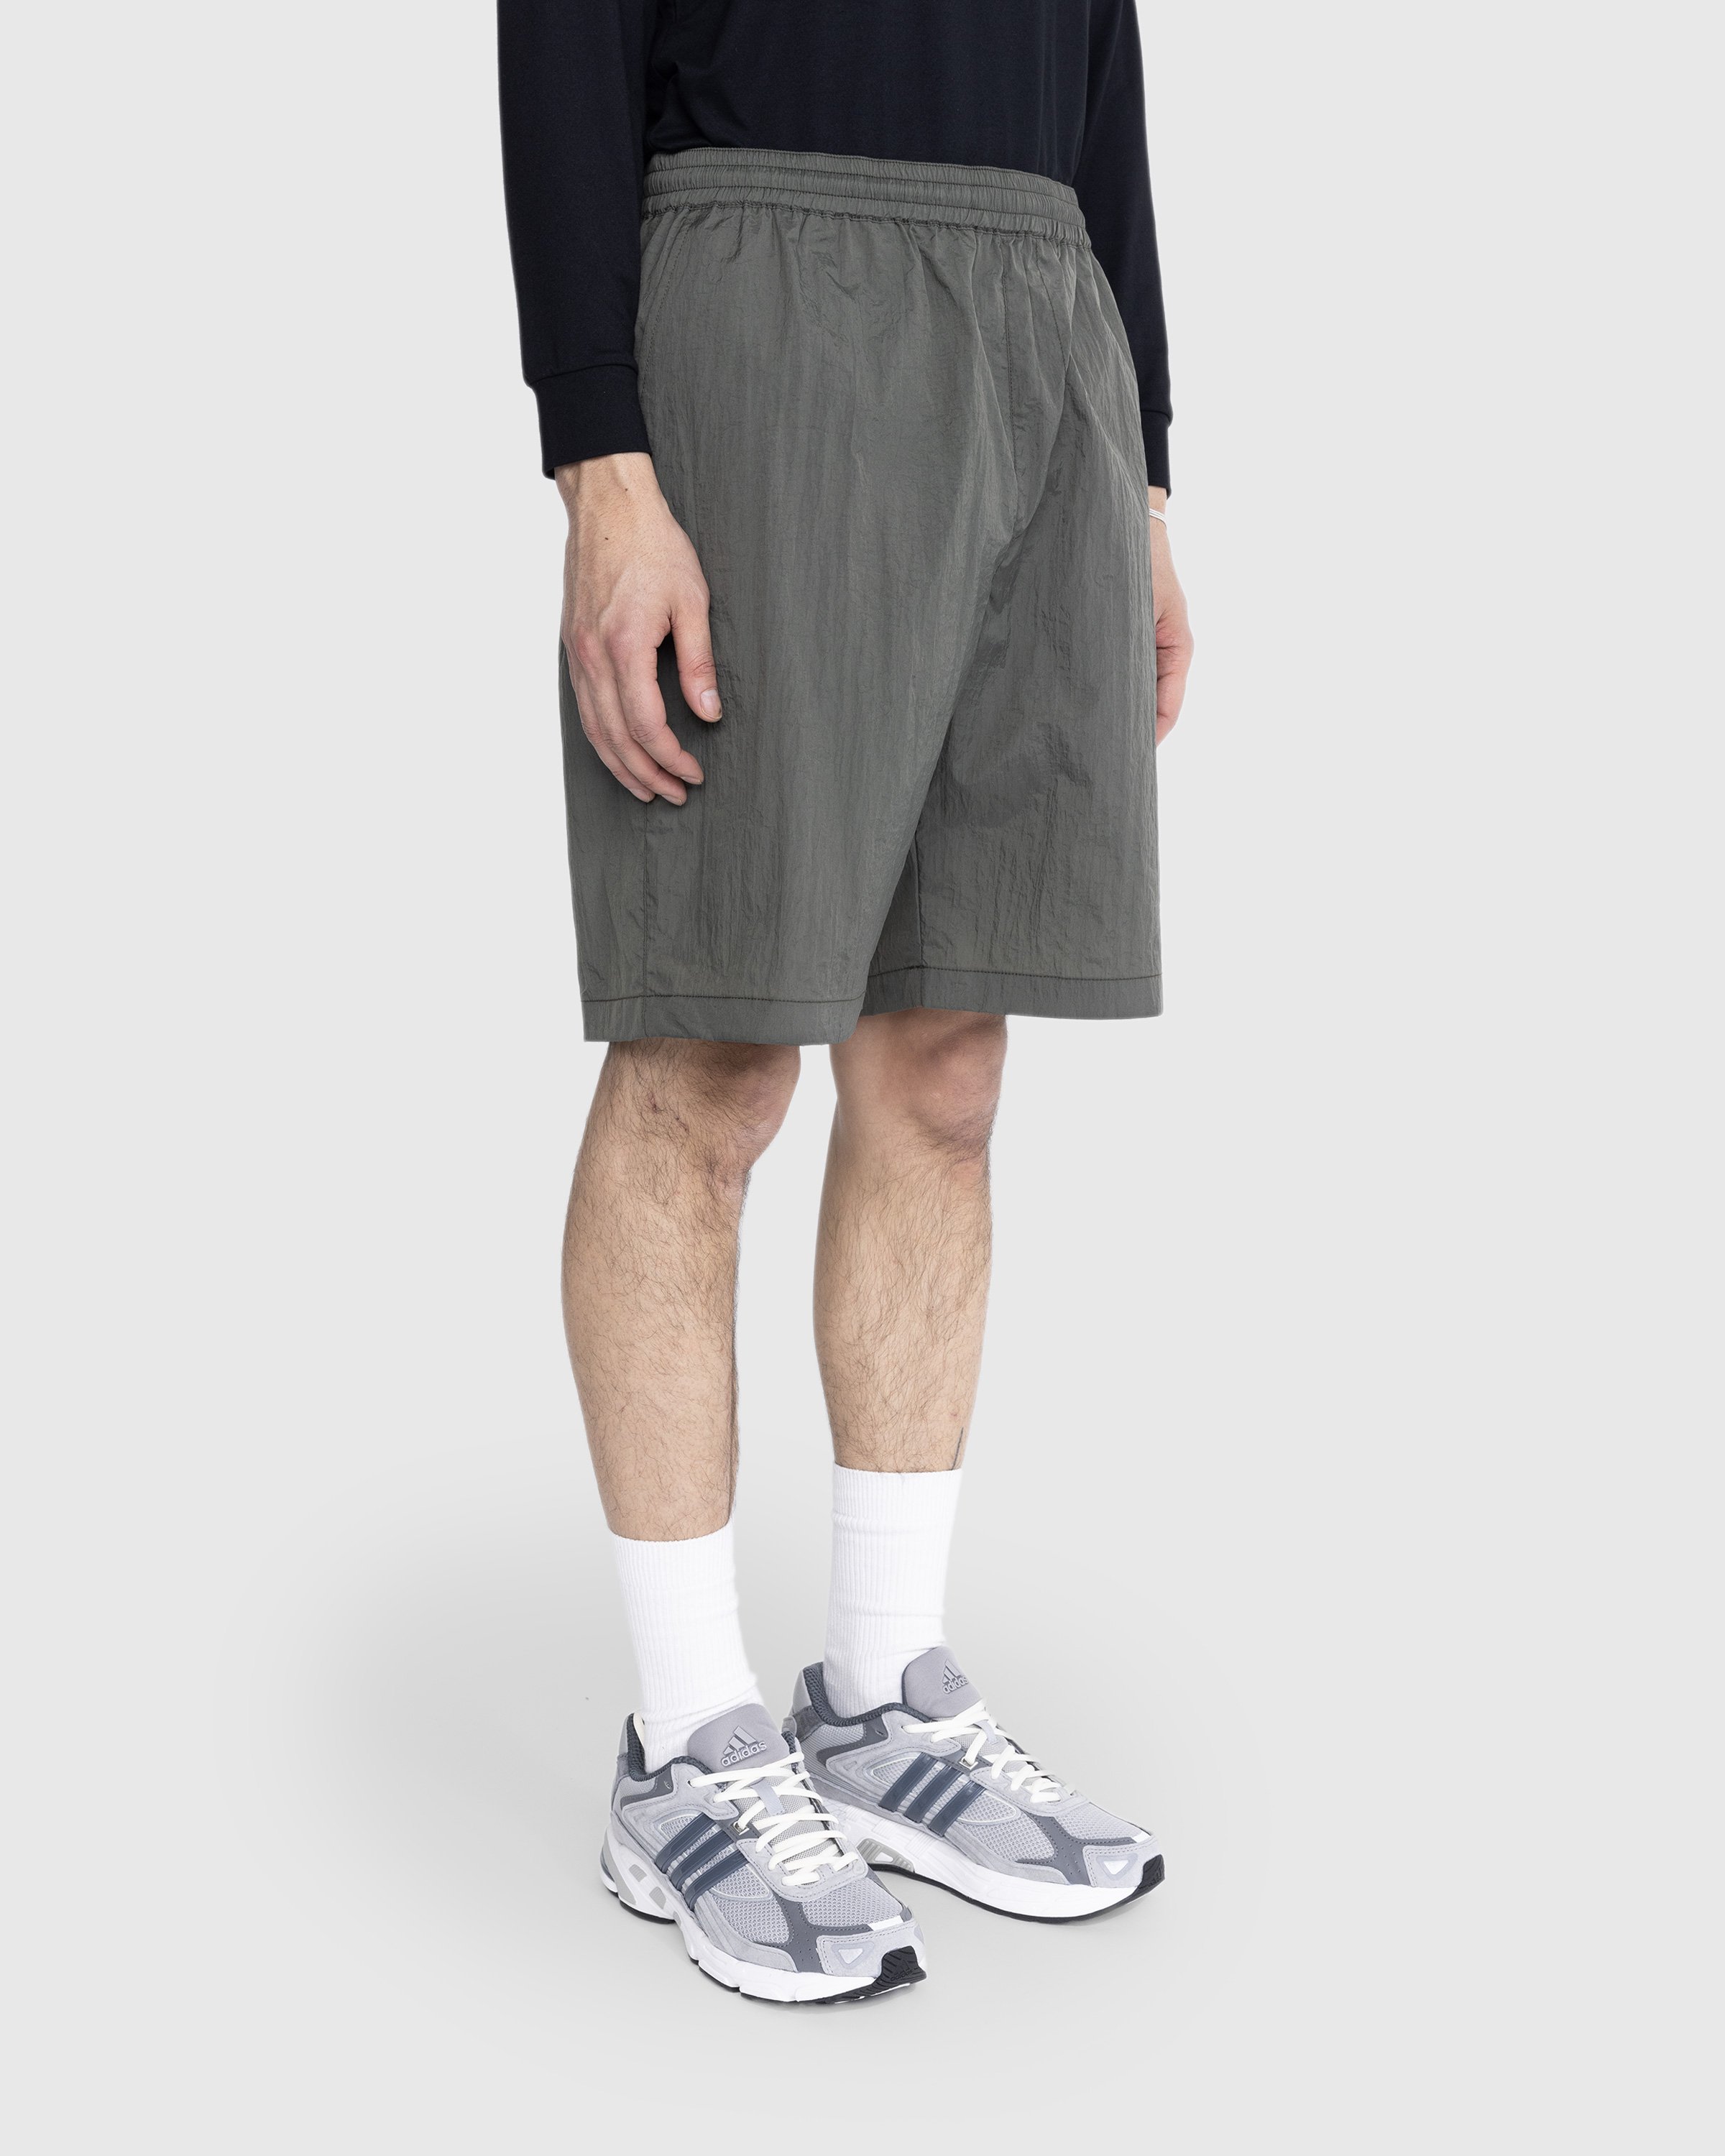 Highsnobiety - Texture Nylon Mid Length Elastic Shorts Grey - Clothing - Grey - Image 4